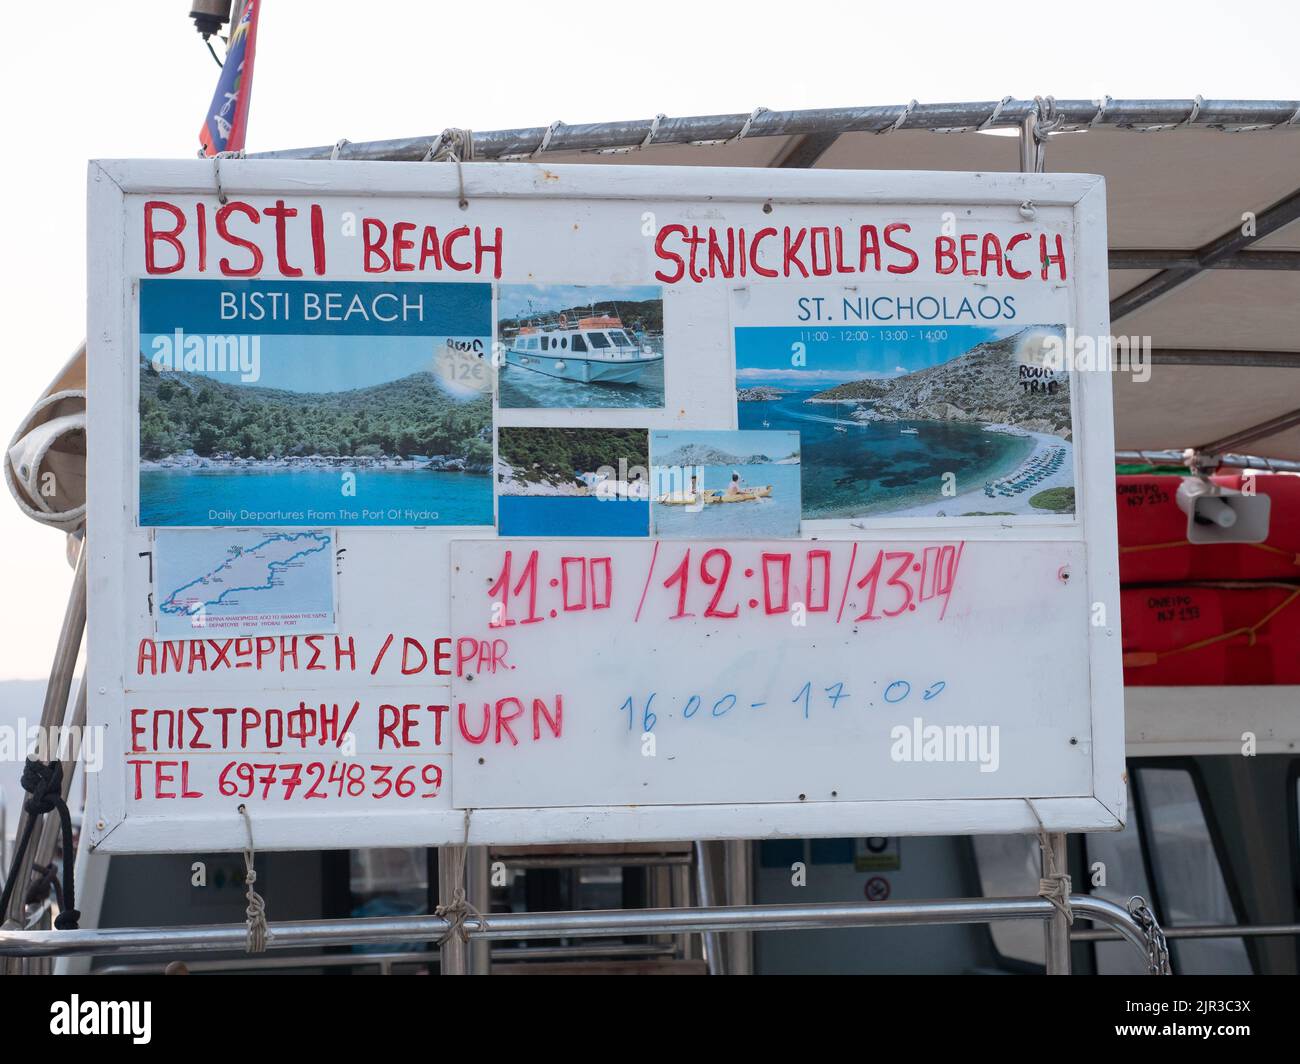 Orario del taxi in barca sull'isola greca di Idra che mostra gli orari delle gite in barca alla spiaggia di Bisti Foto Stock